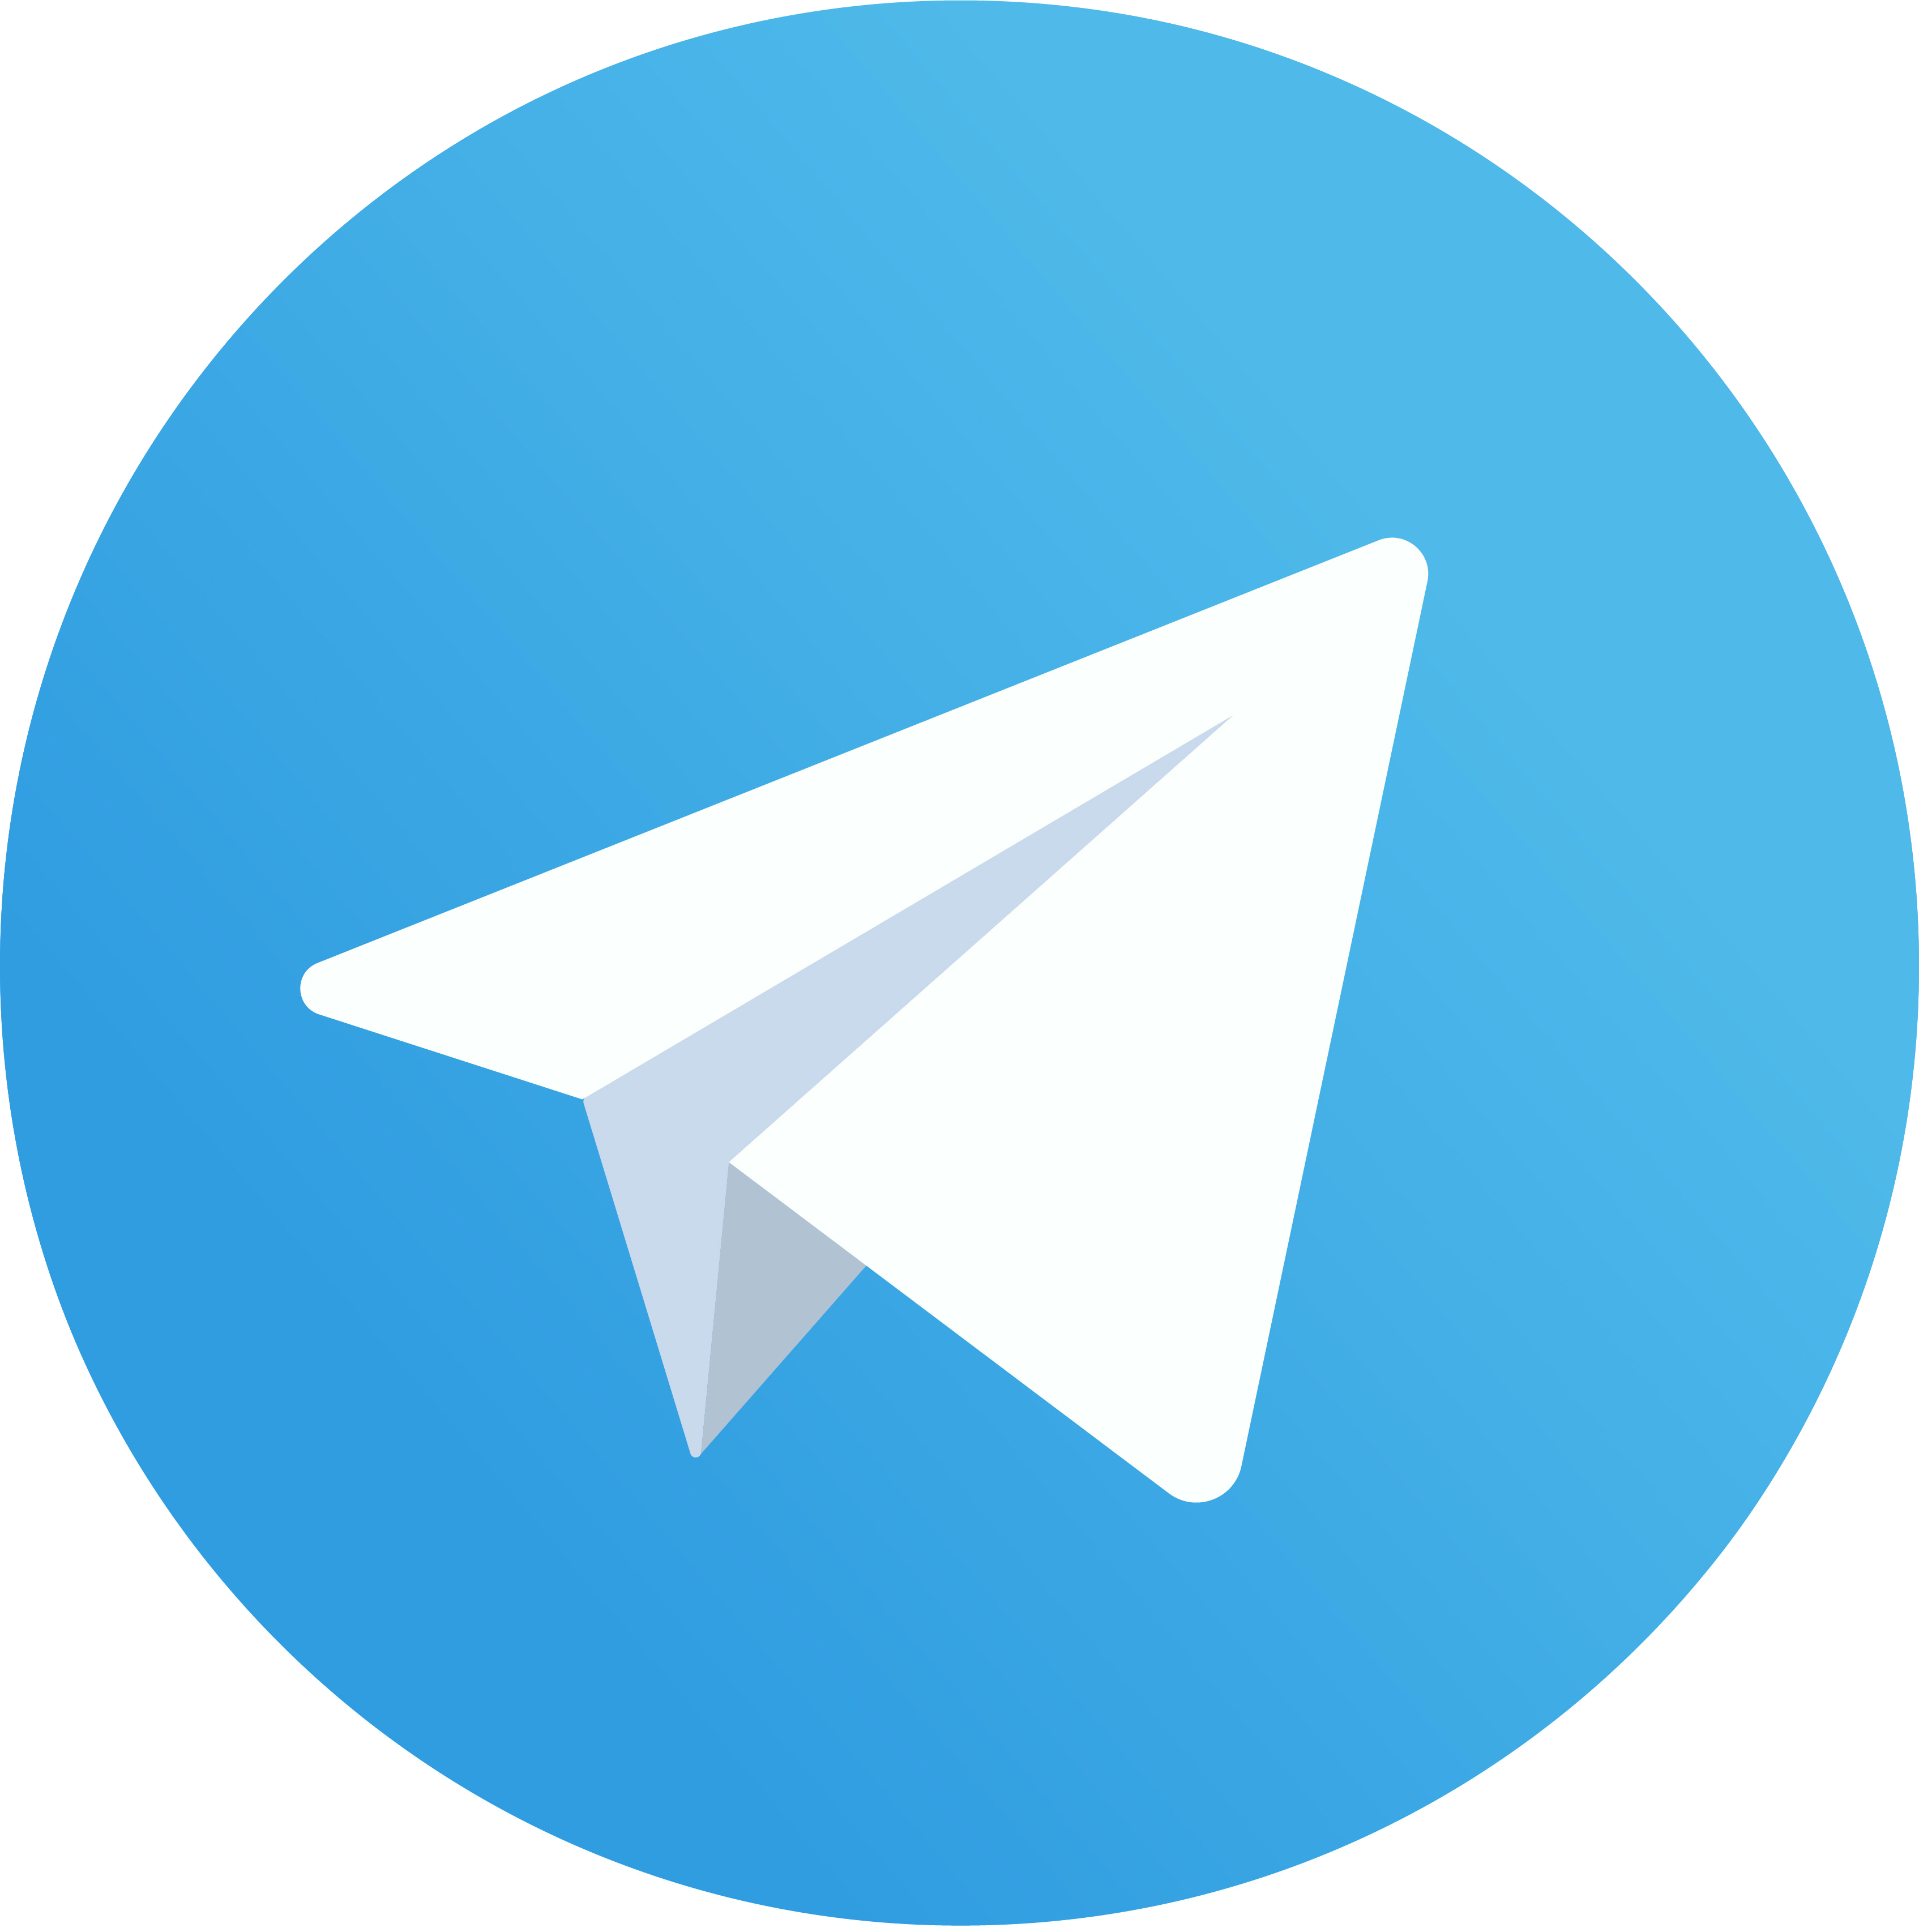 Работающие бизнес-советы и полезные материалы каждый день в нашем Telegram-канале